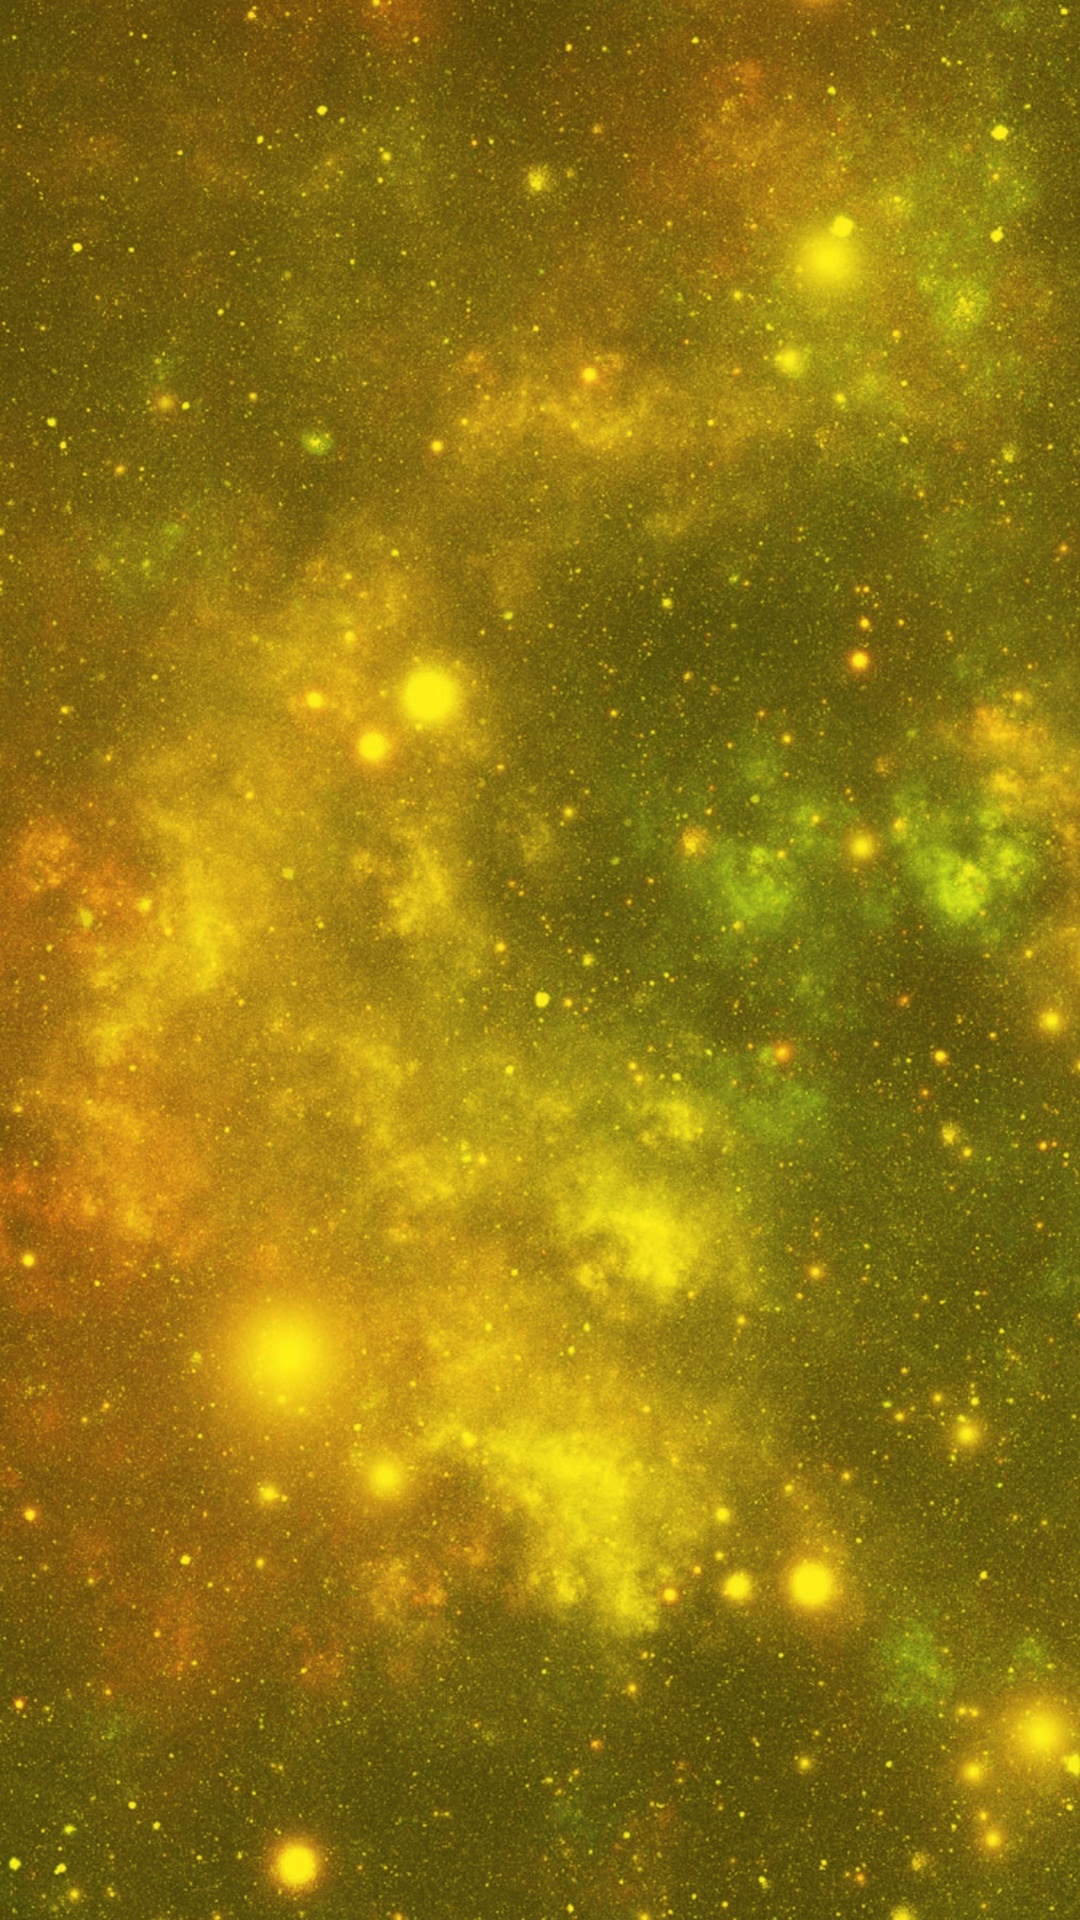 Étoiles Vertes et Jaunes Dans le Ciel. Wallpaper in 1080x1920 Resolution